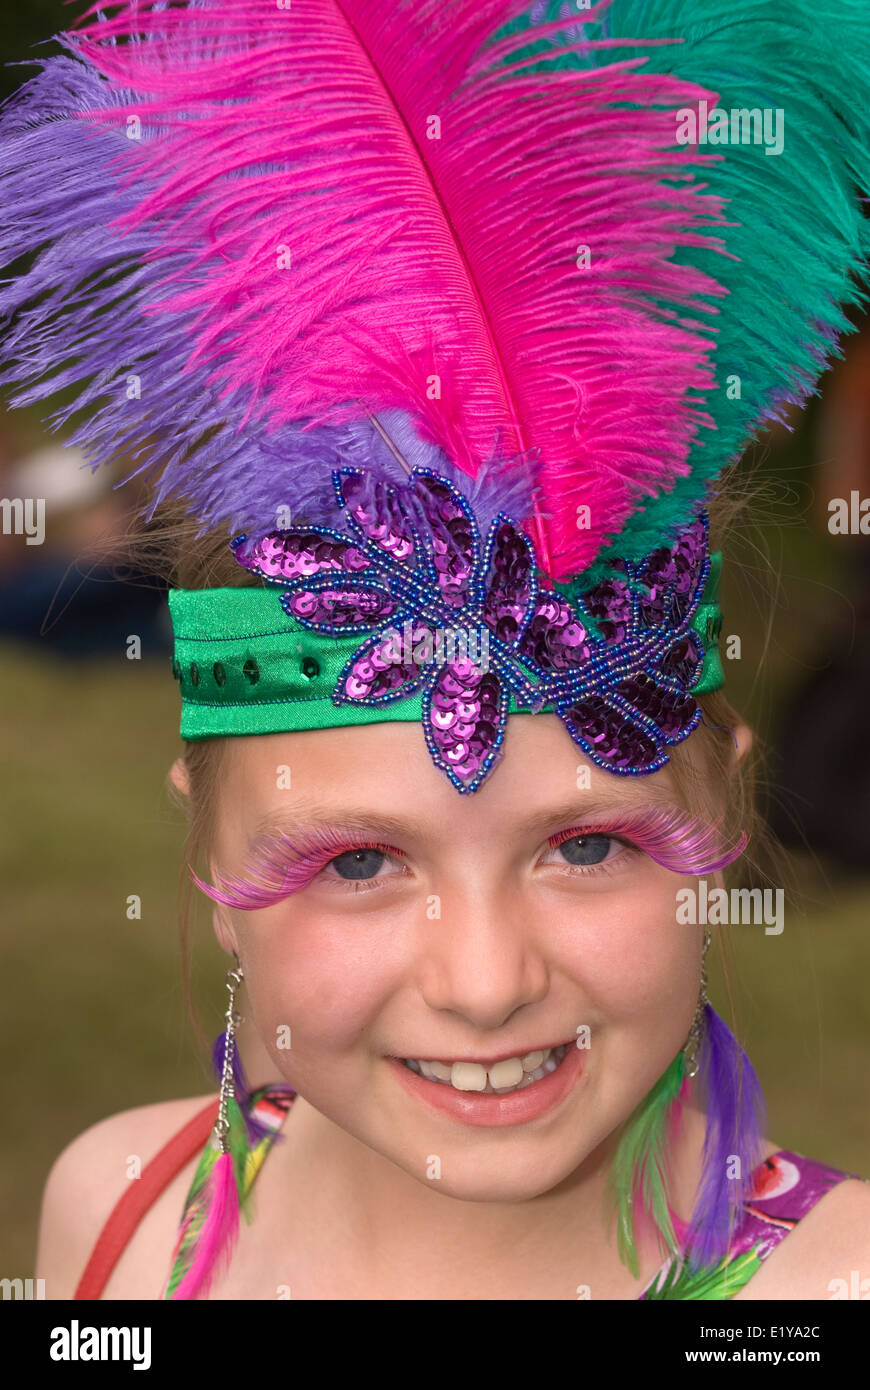 8 ans, fille, portant des costumes de carnaval brésilien/foire d'été à un village qui avait une coupe du monde 2014 Brésil/thème... Banque D'Images